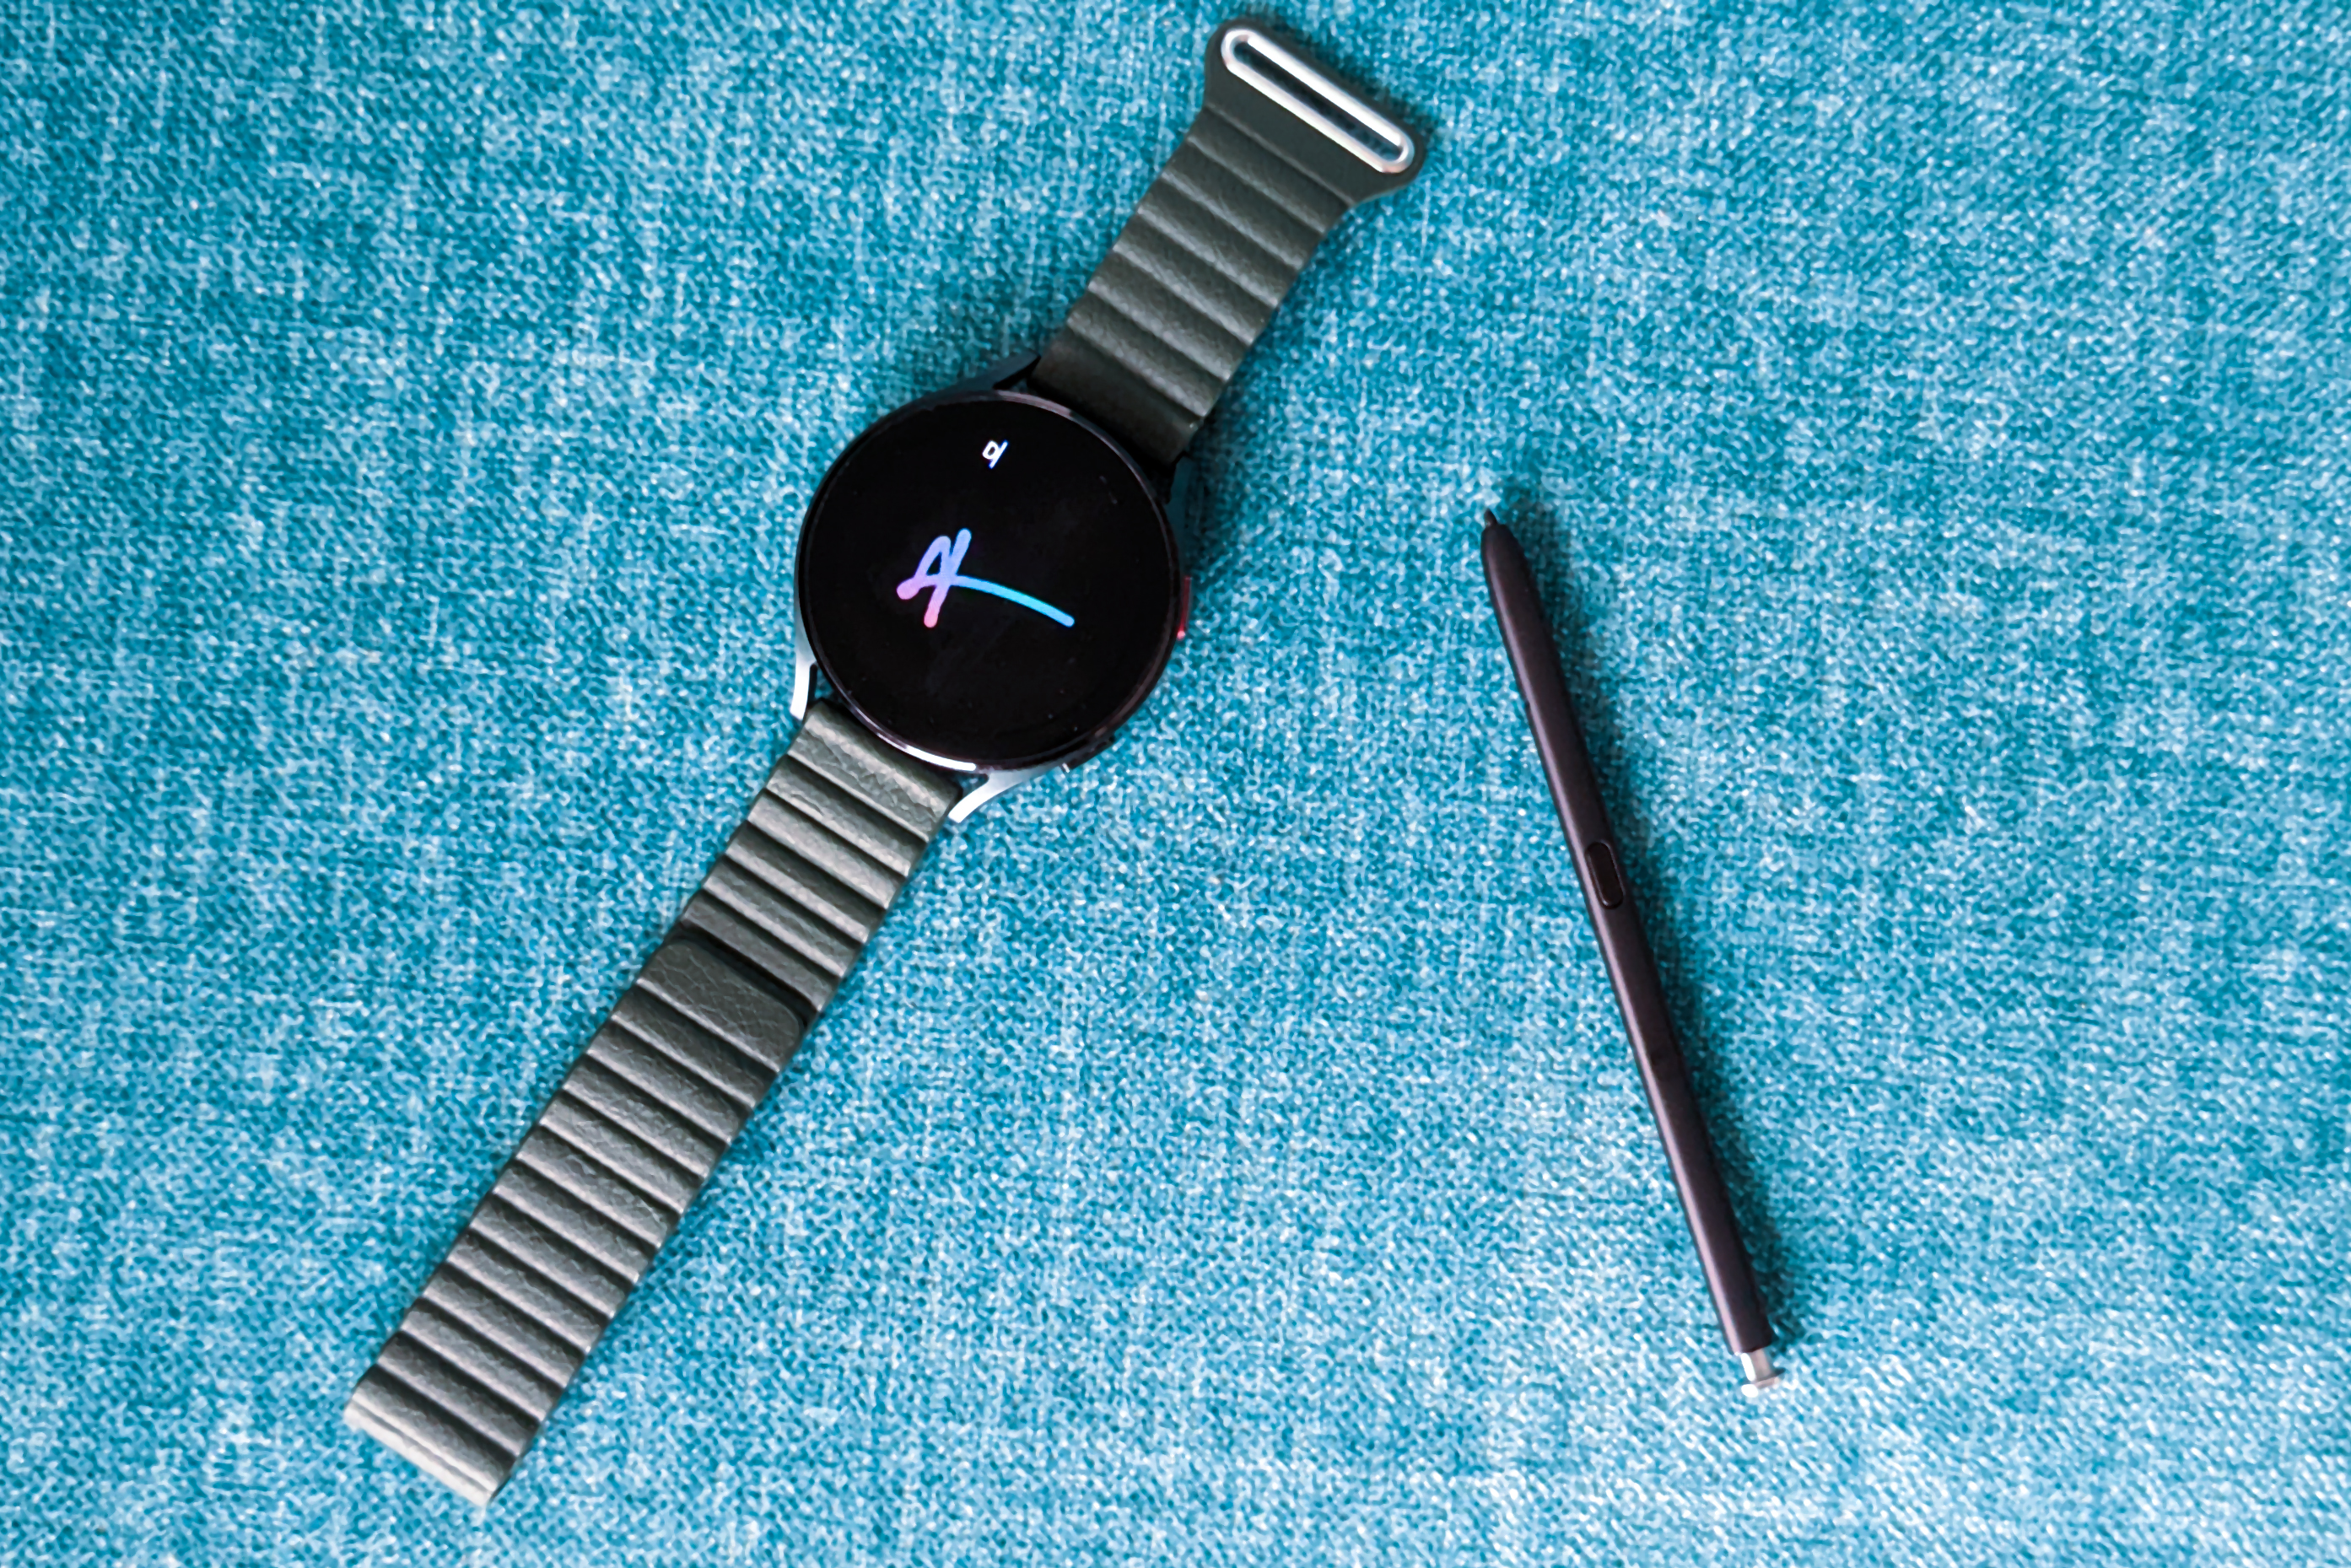 Samsung Galaxy Watch 4 com S Pen do Galaxy S22 Ultra em um fundo azul.